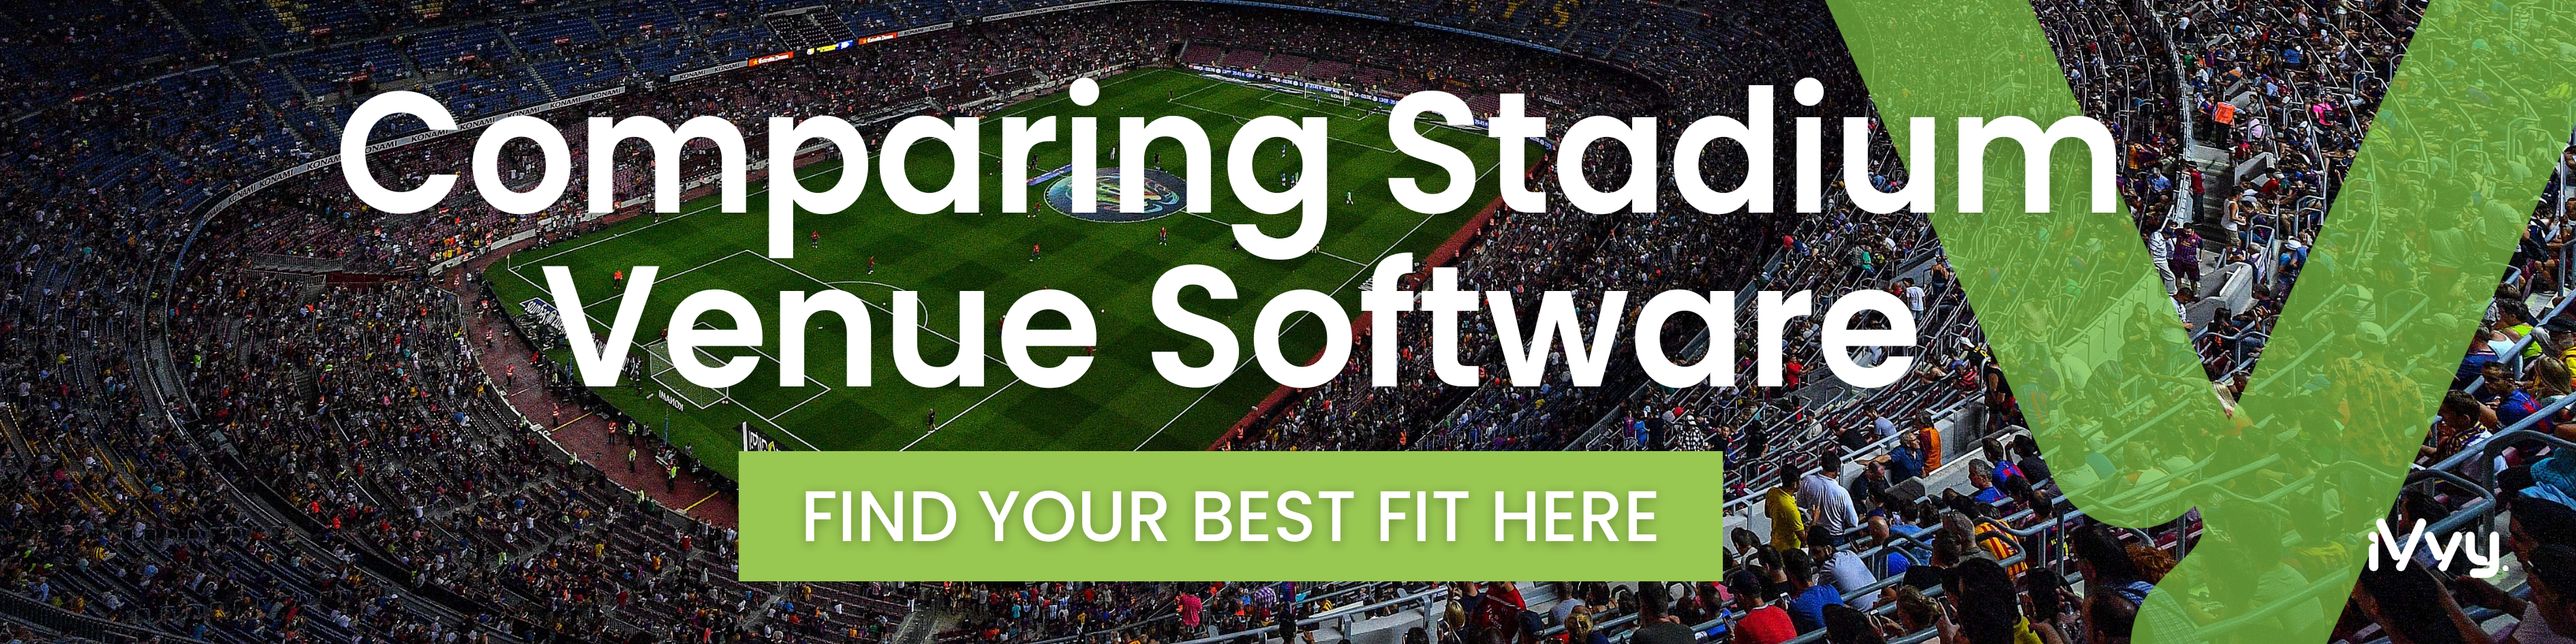 Comparing stadium venue software